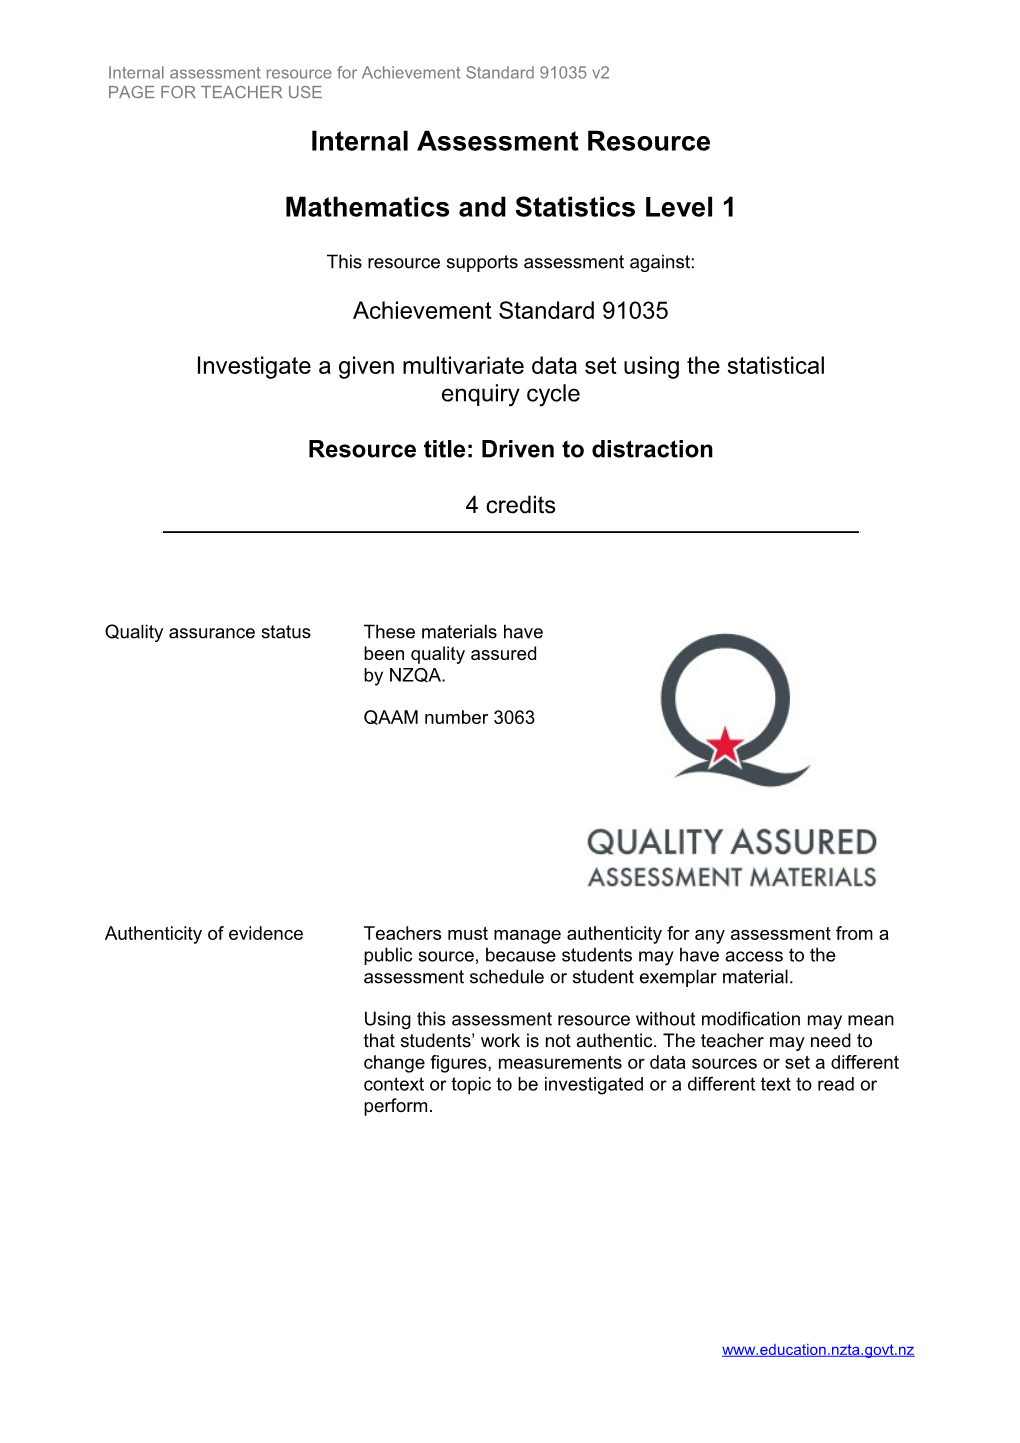 Internal Assessment Resource for Achievement Standard 91035 V2